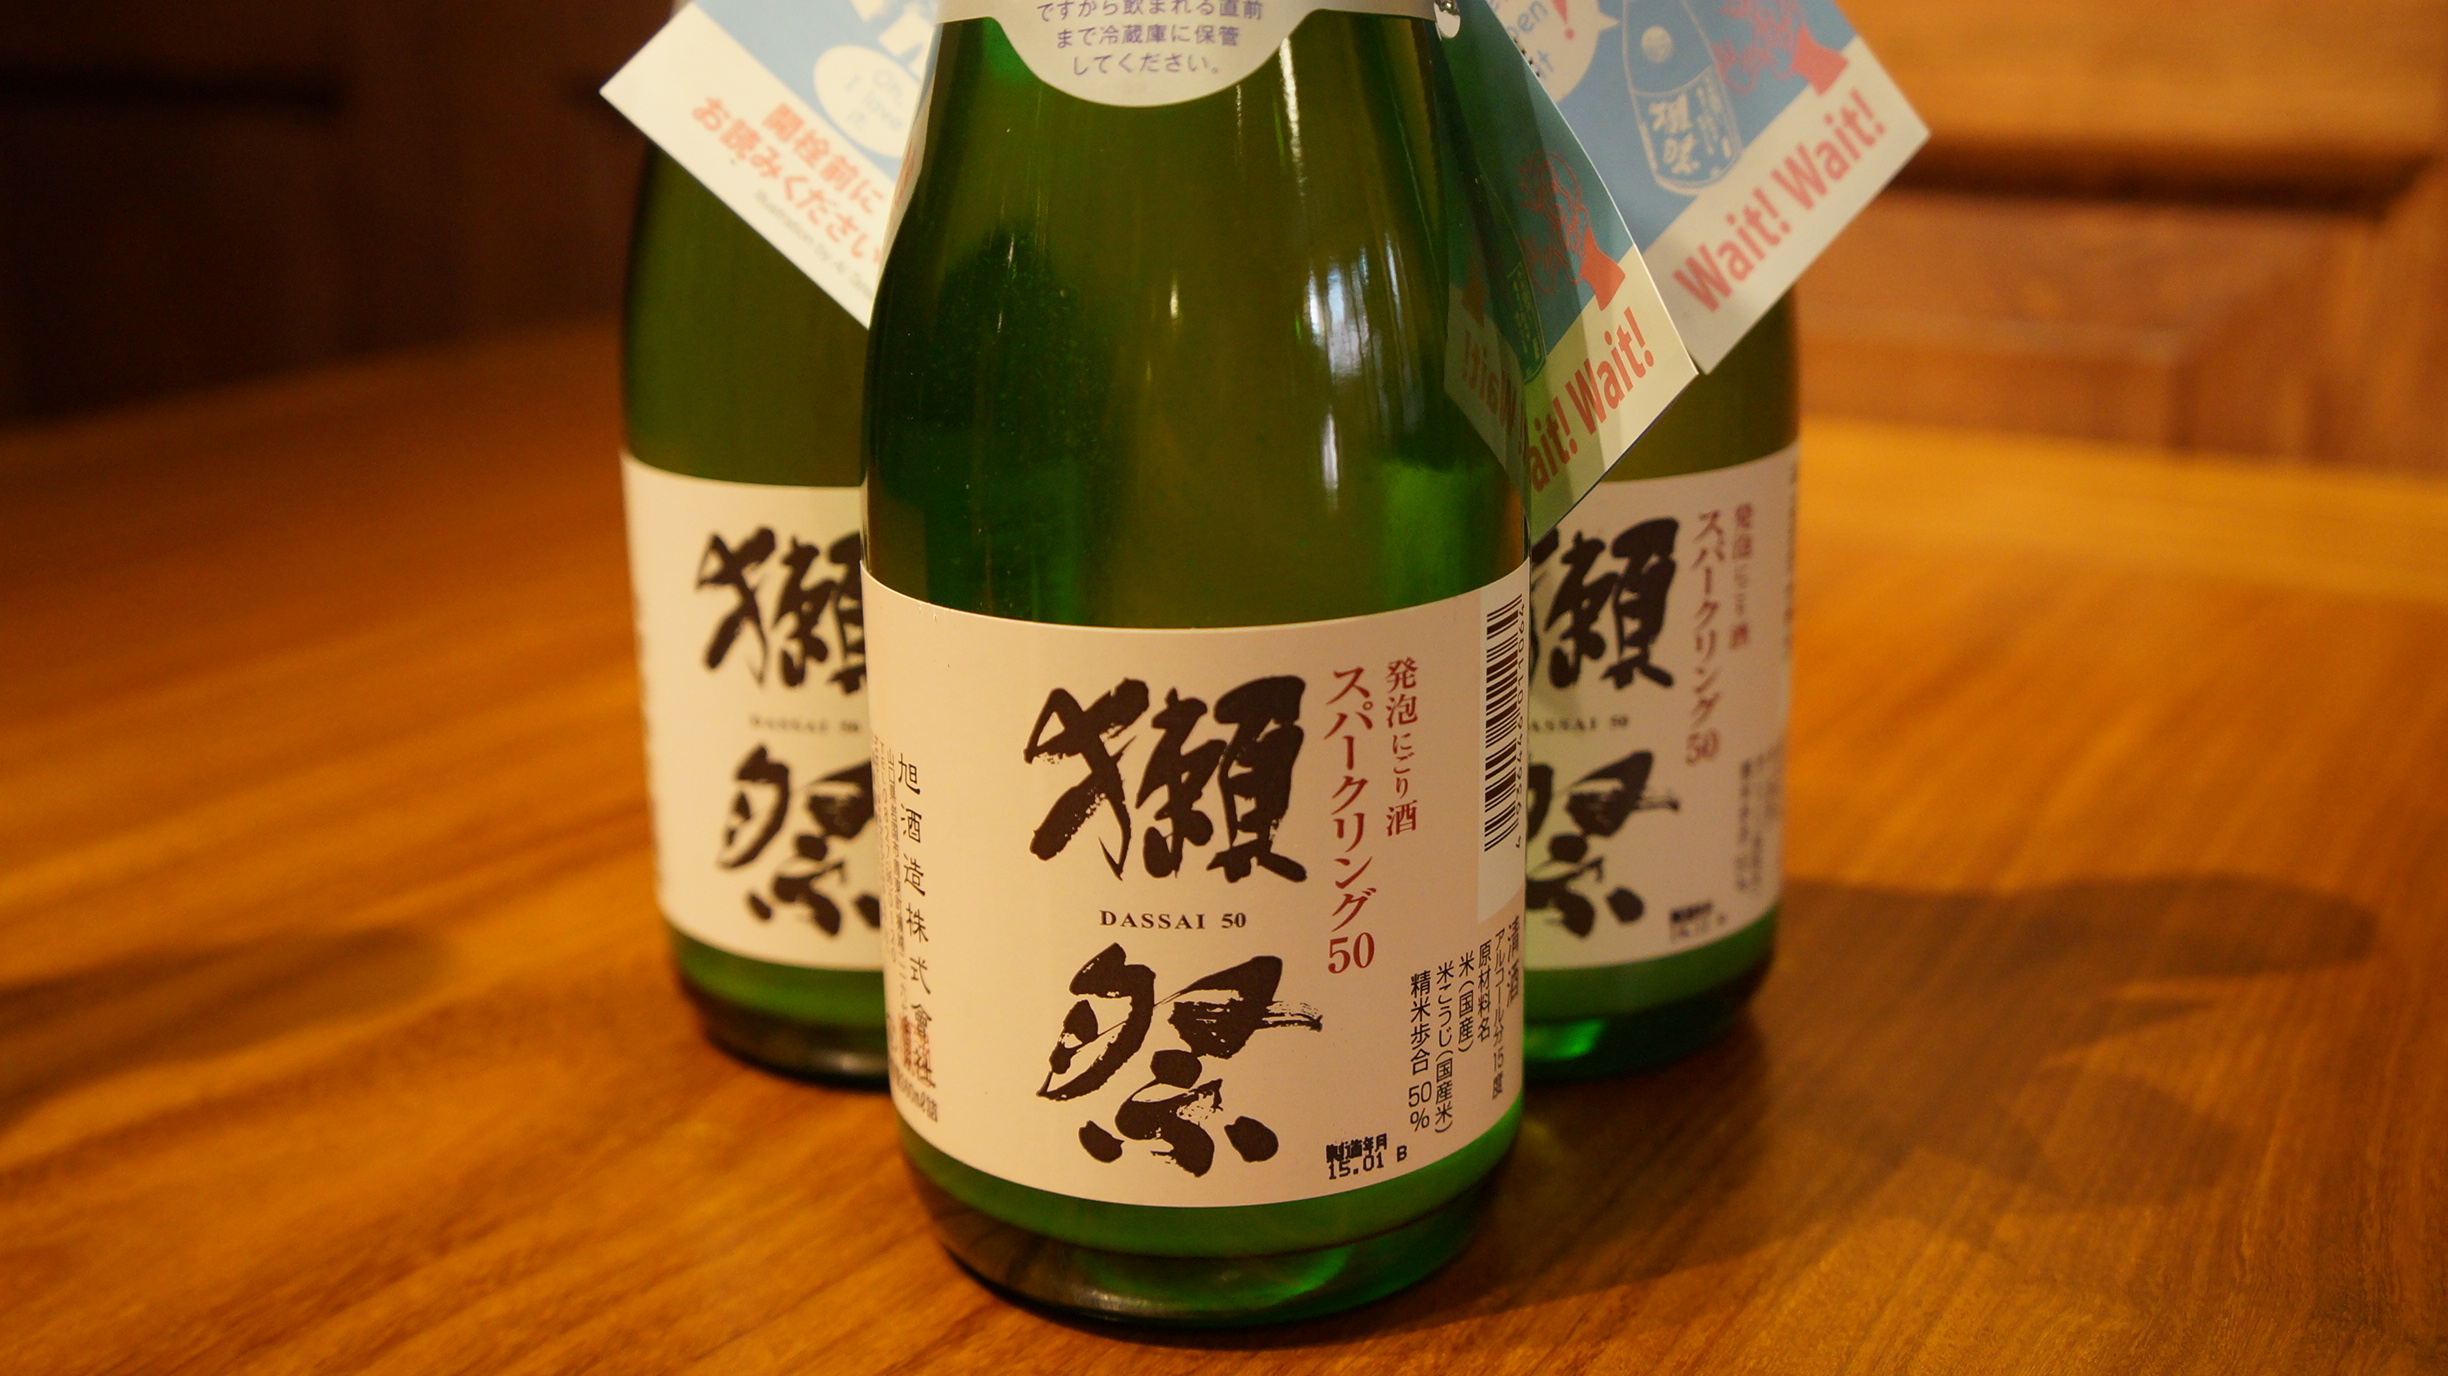 渋谷 円山町わだつみ３月の日本酒をご紹介します 円山町わだつみ 渋谷の日本家屋 蕎麦 天ぷら 日本酒を楽しむお店